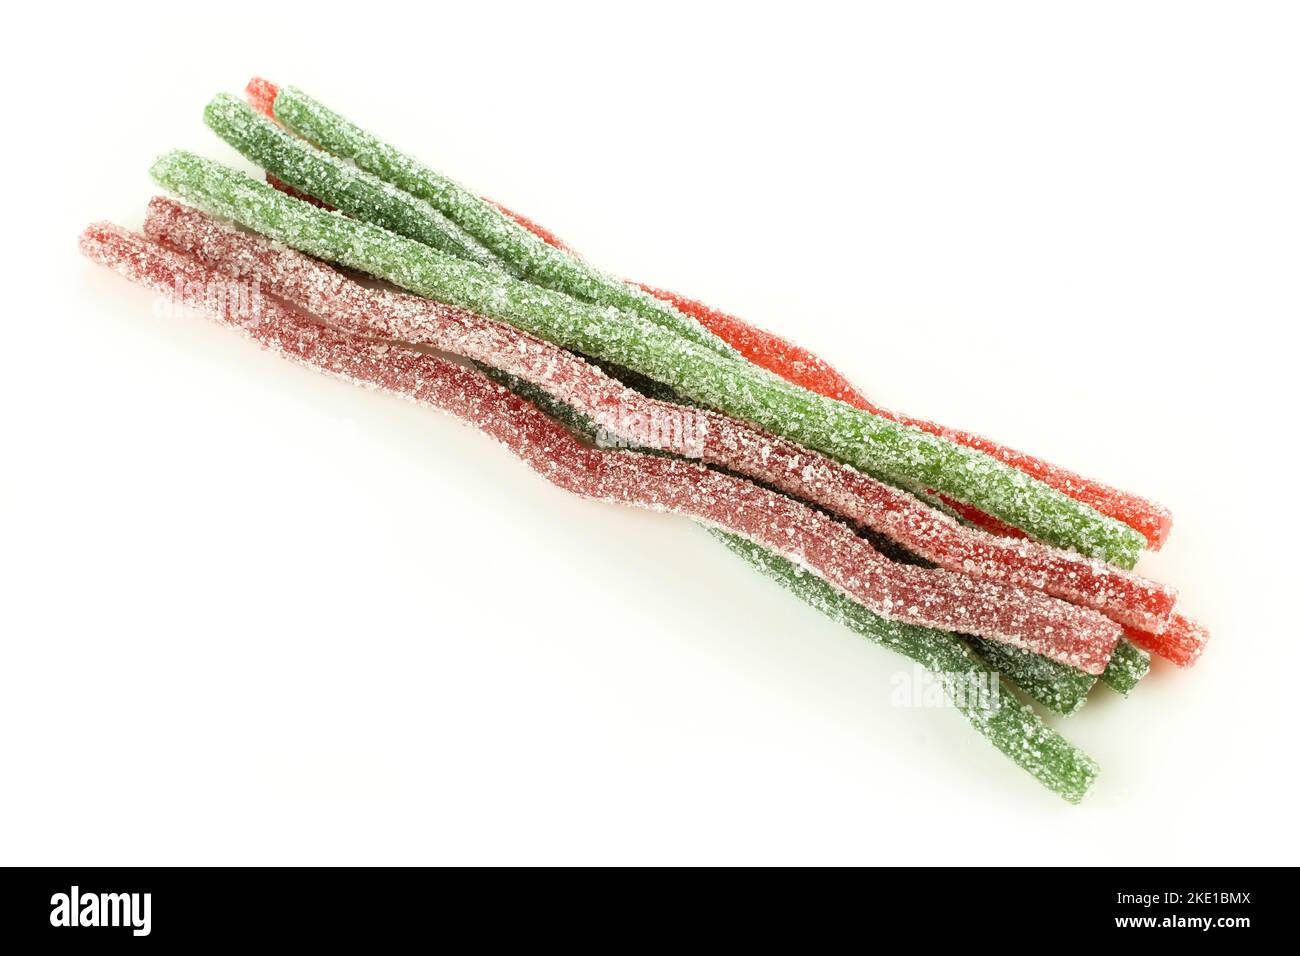 Gruppo di vermi masticati verdi rossi isolati su sfondo bianco. Caramelle in amour ricoperte di zucchero per bambini Foto Stock